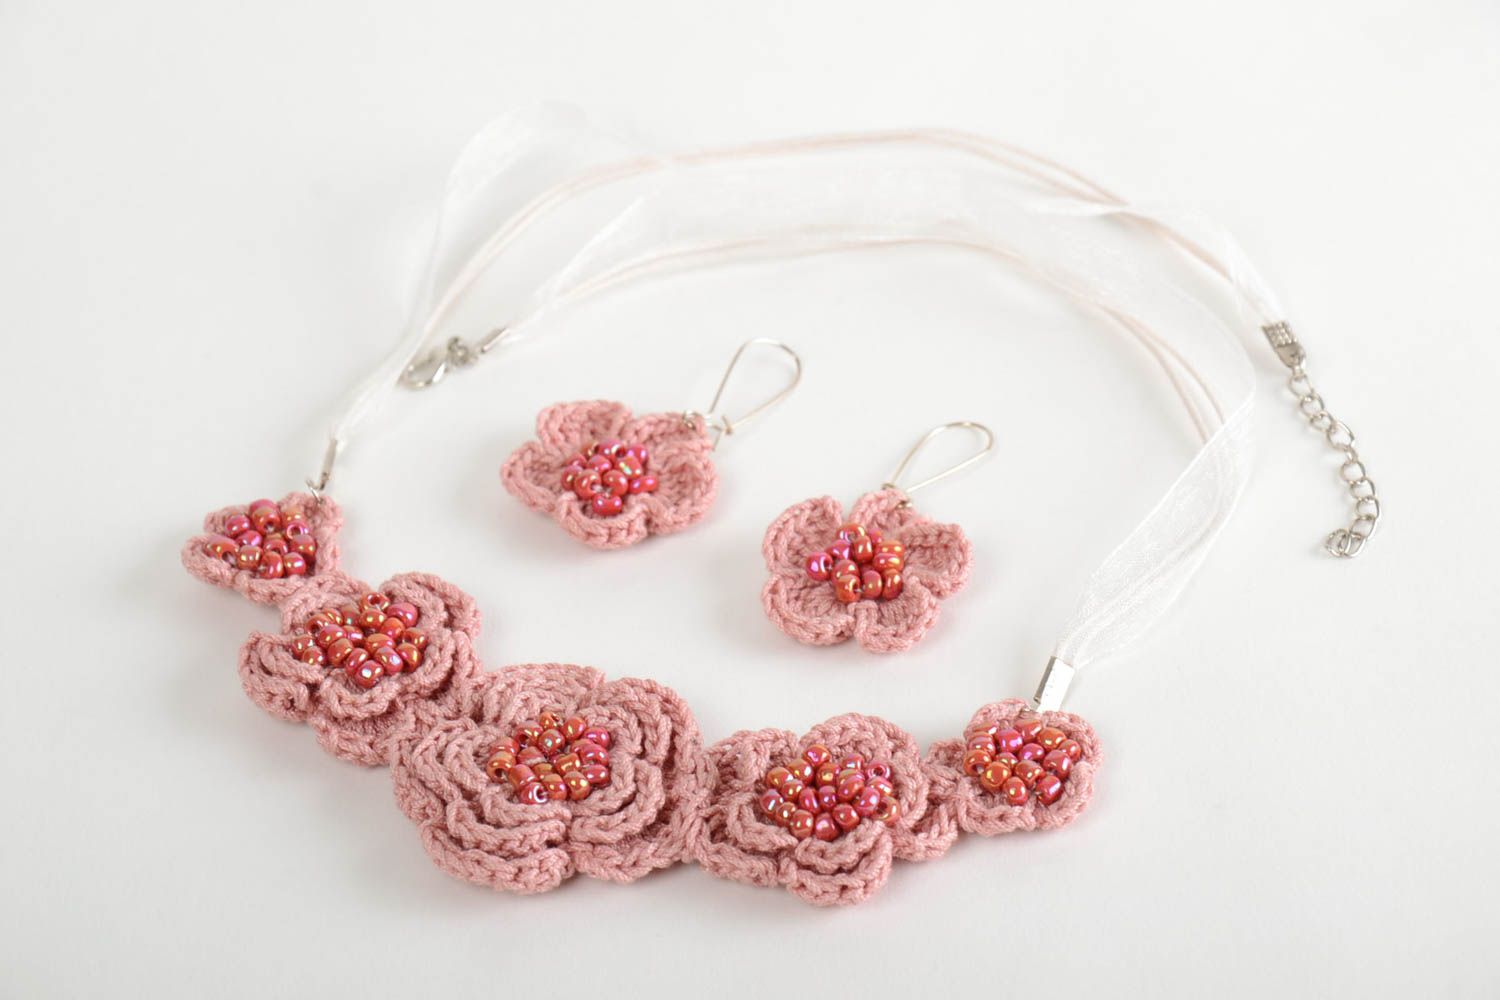 Textil Schmuckset in Rosa Collier und Ohrringe gehäkelt schön handgemacht foto 3